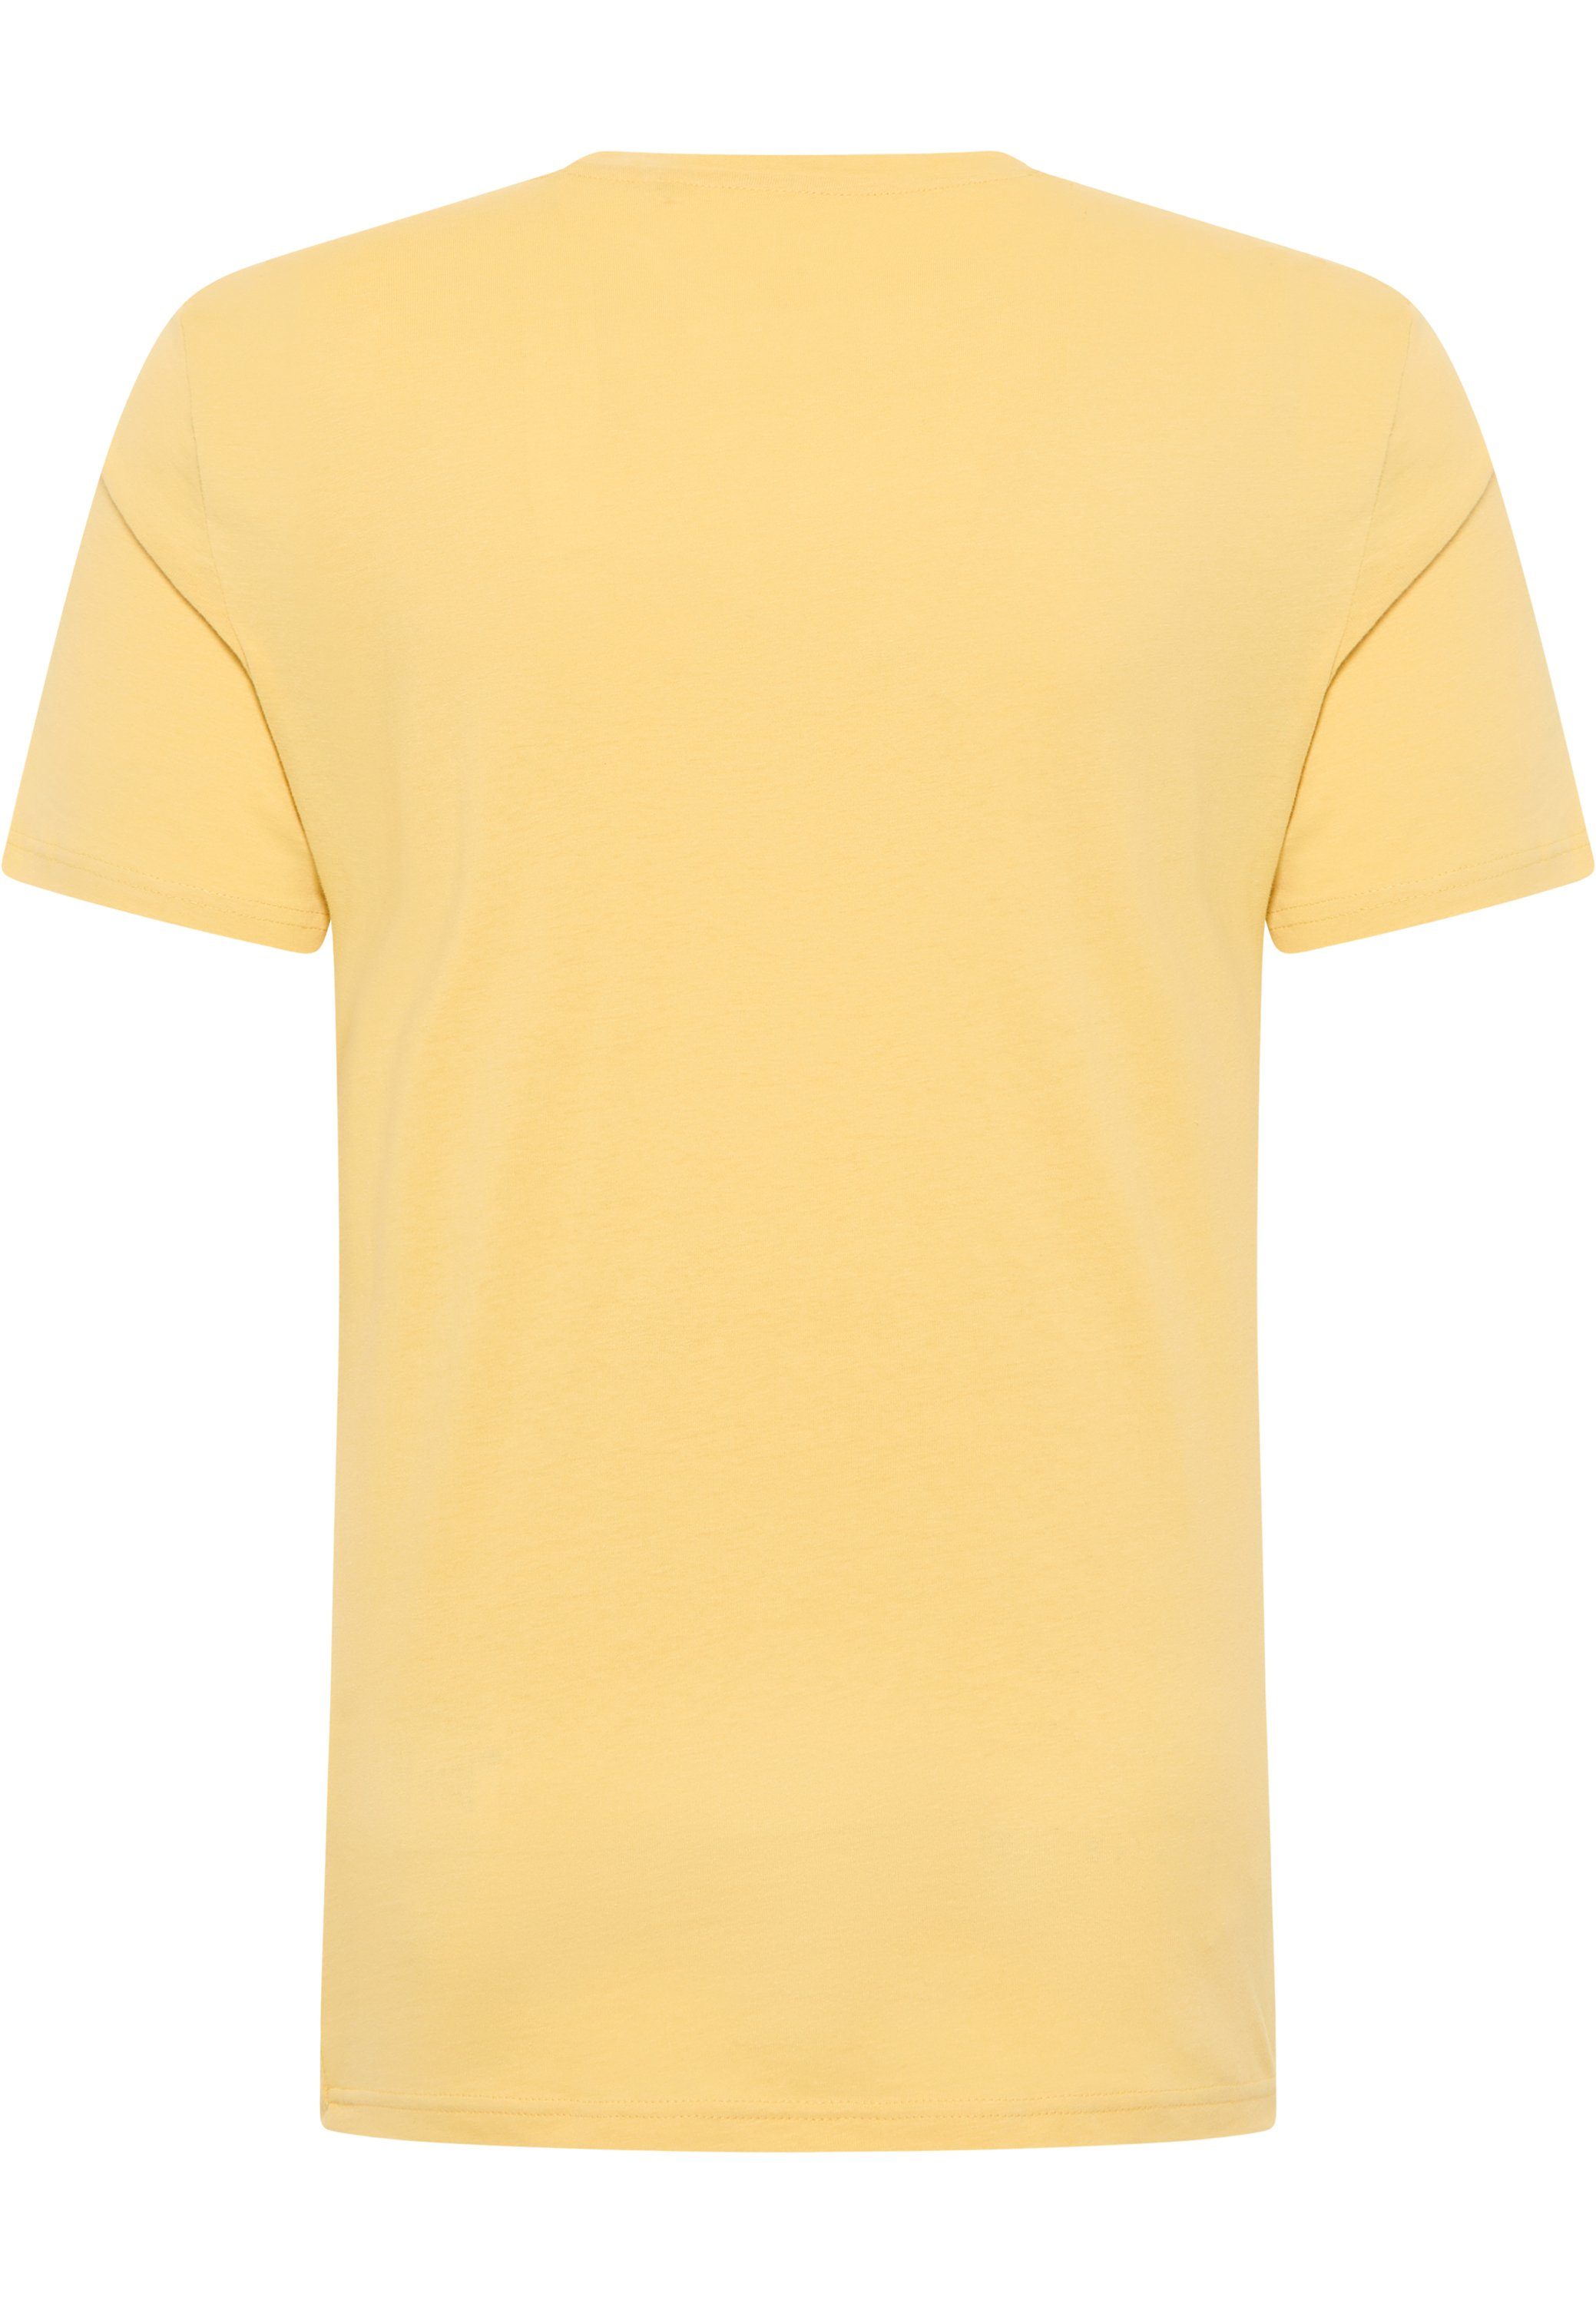 T-Shirt MUSTANG gelb Mustang Kurzarmshirt